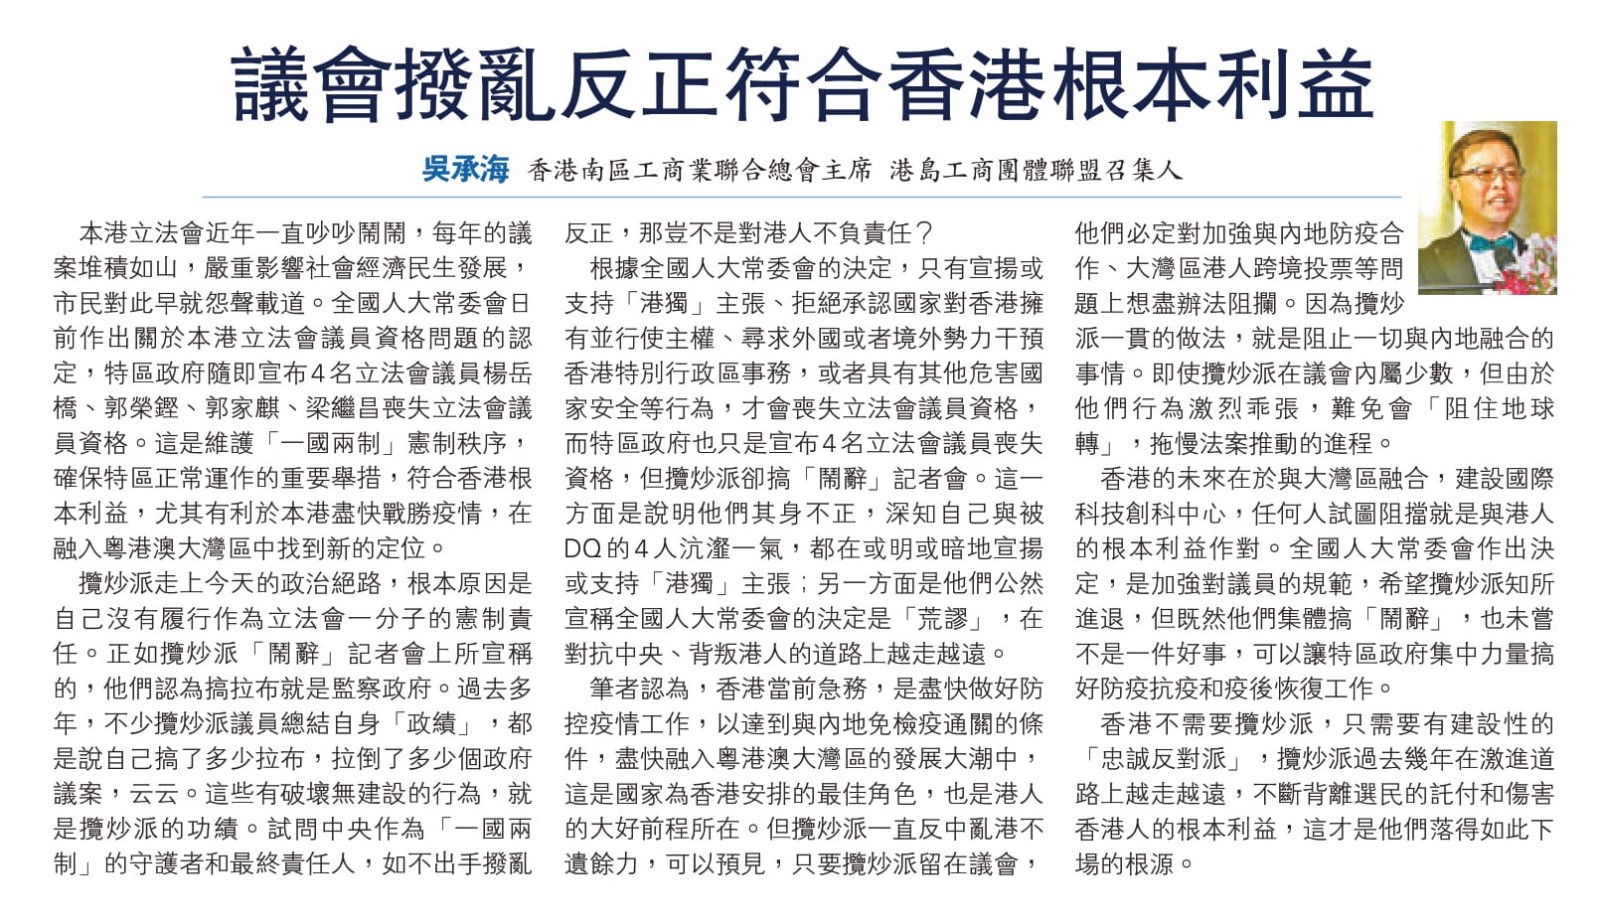 吳承海 副理事長 刊文 議會撥亂反正符合香港根本利益-0